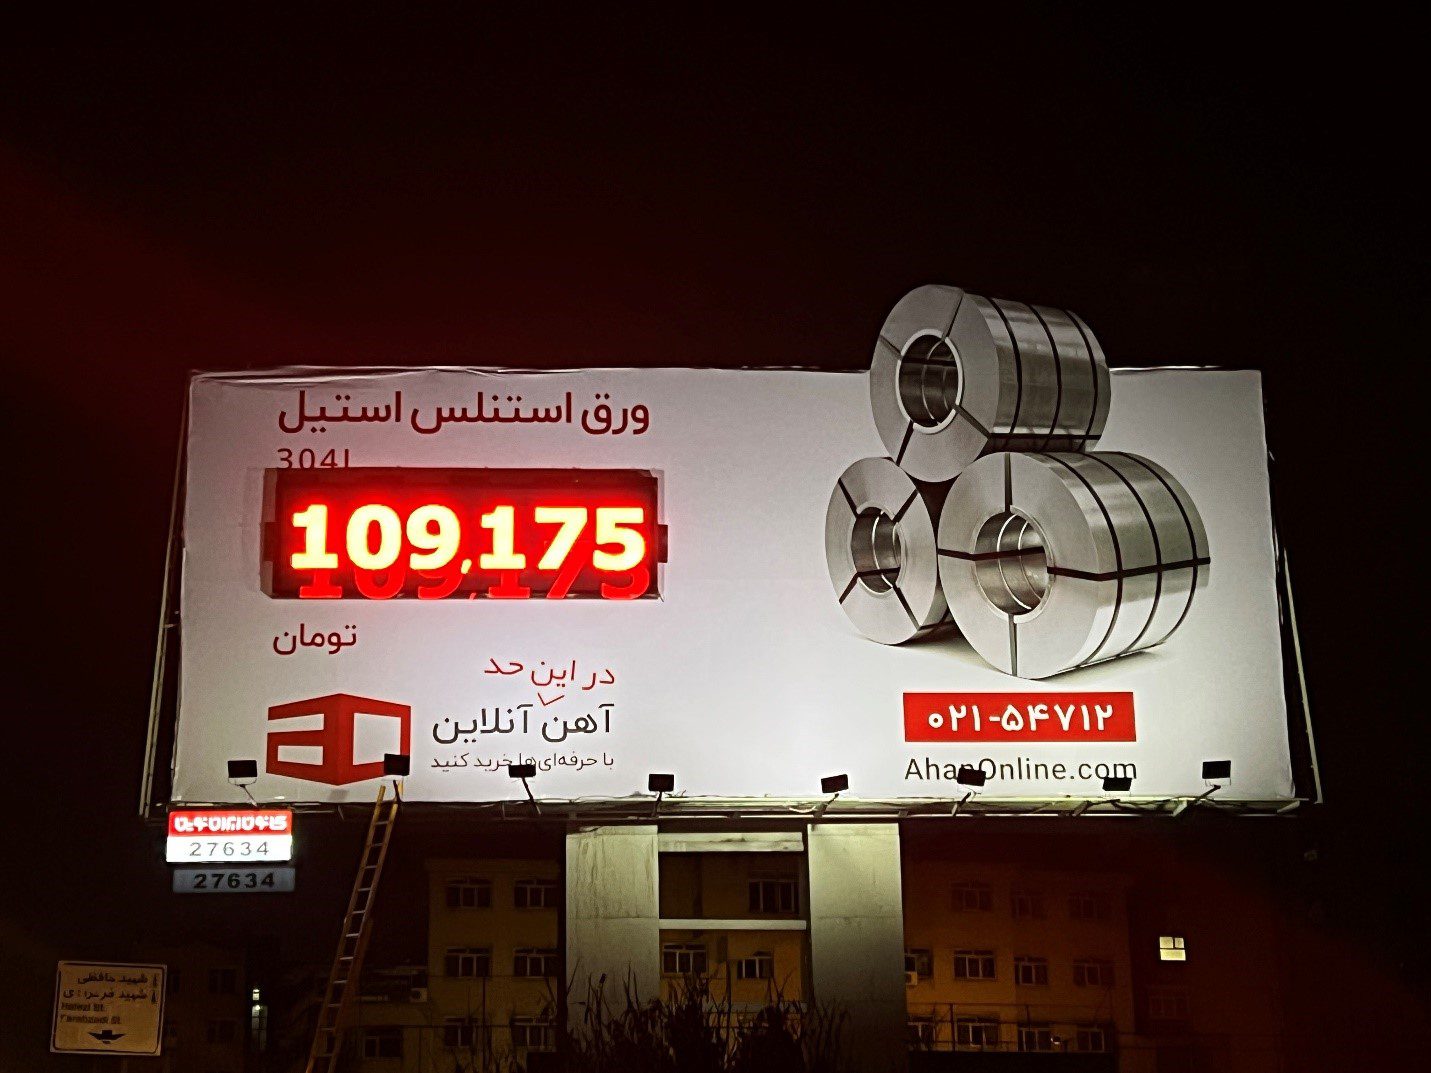 جذاب ترین بیلبورد تبلیغاتی آنلاین در ایران